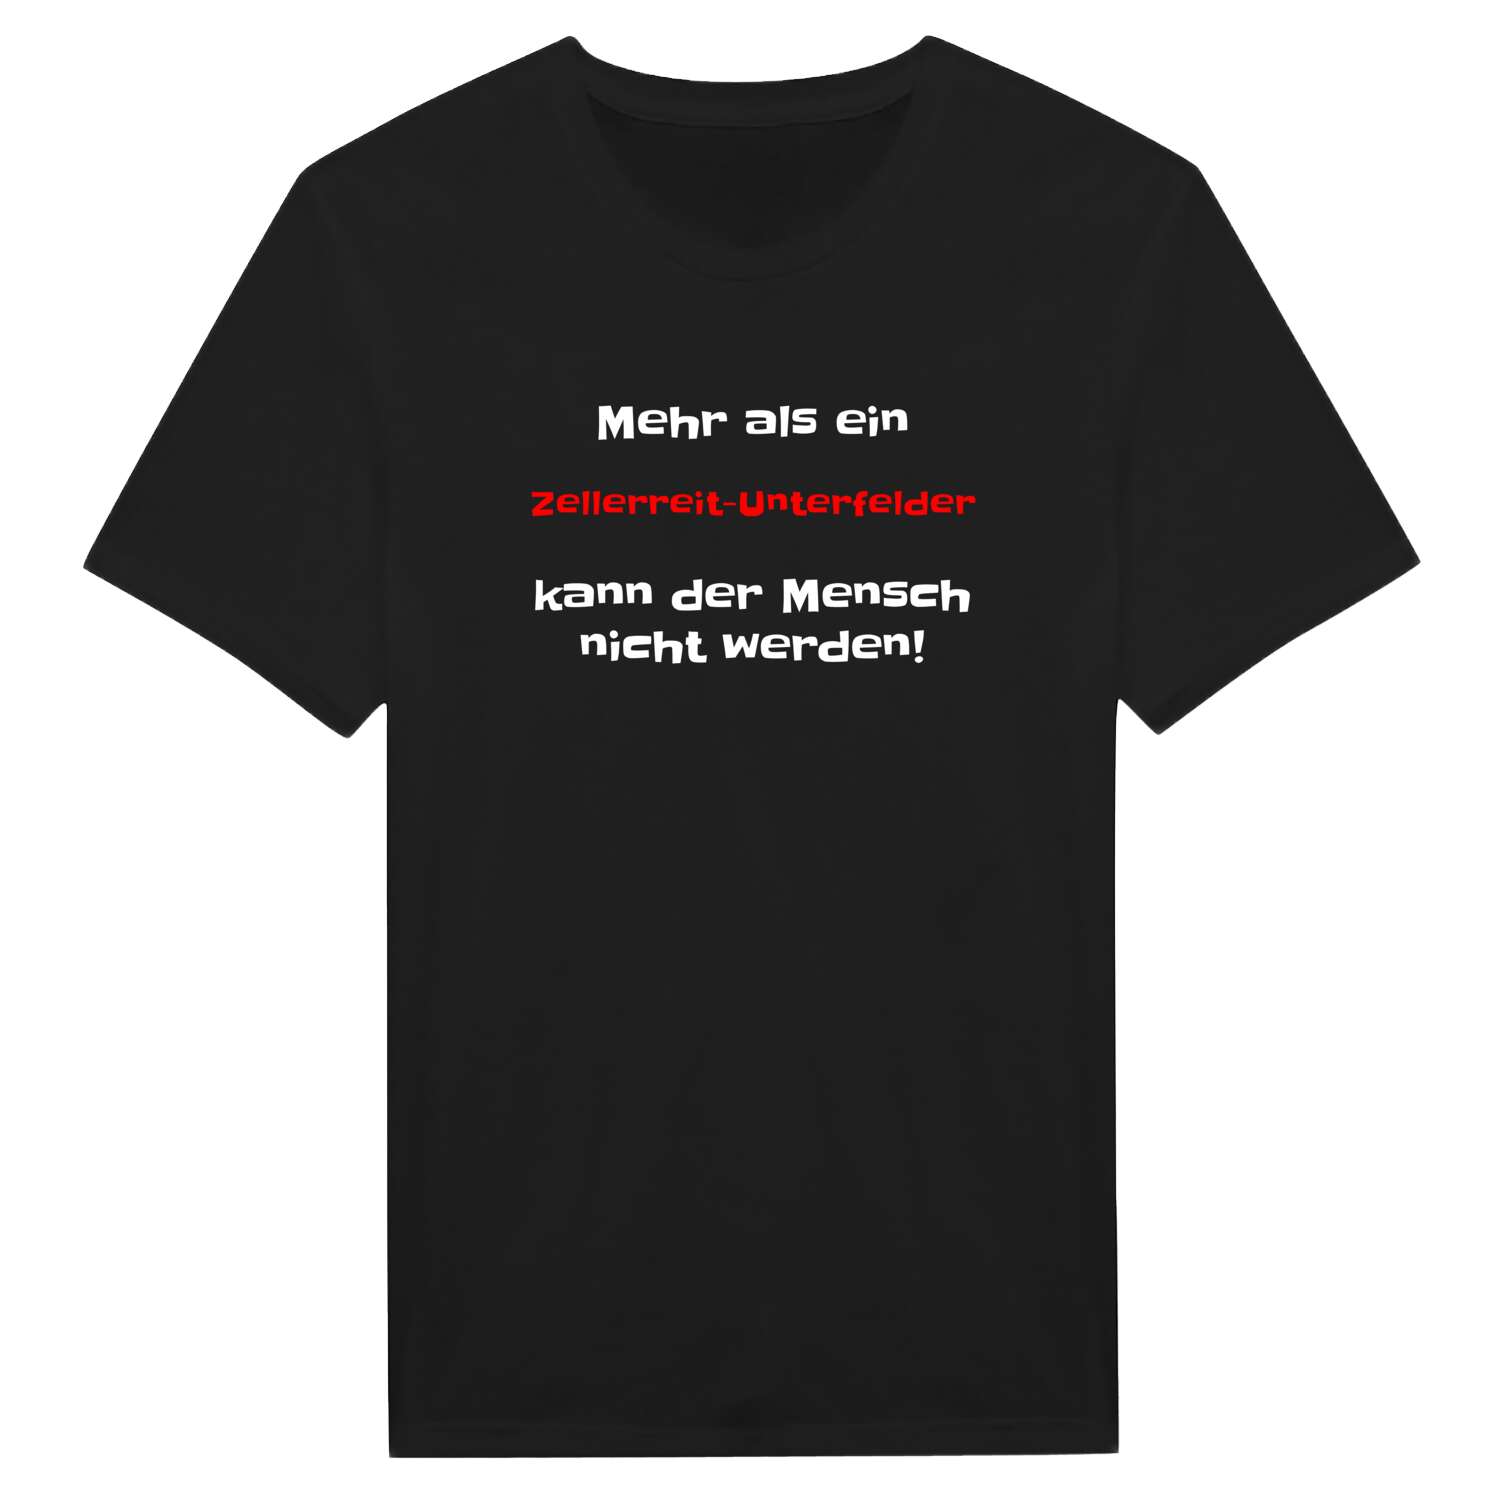 Zellerreit-Unterfeld T-Shirt »Mehr als ein«